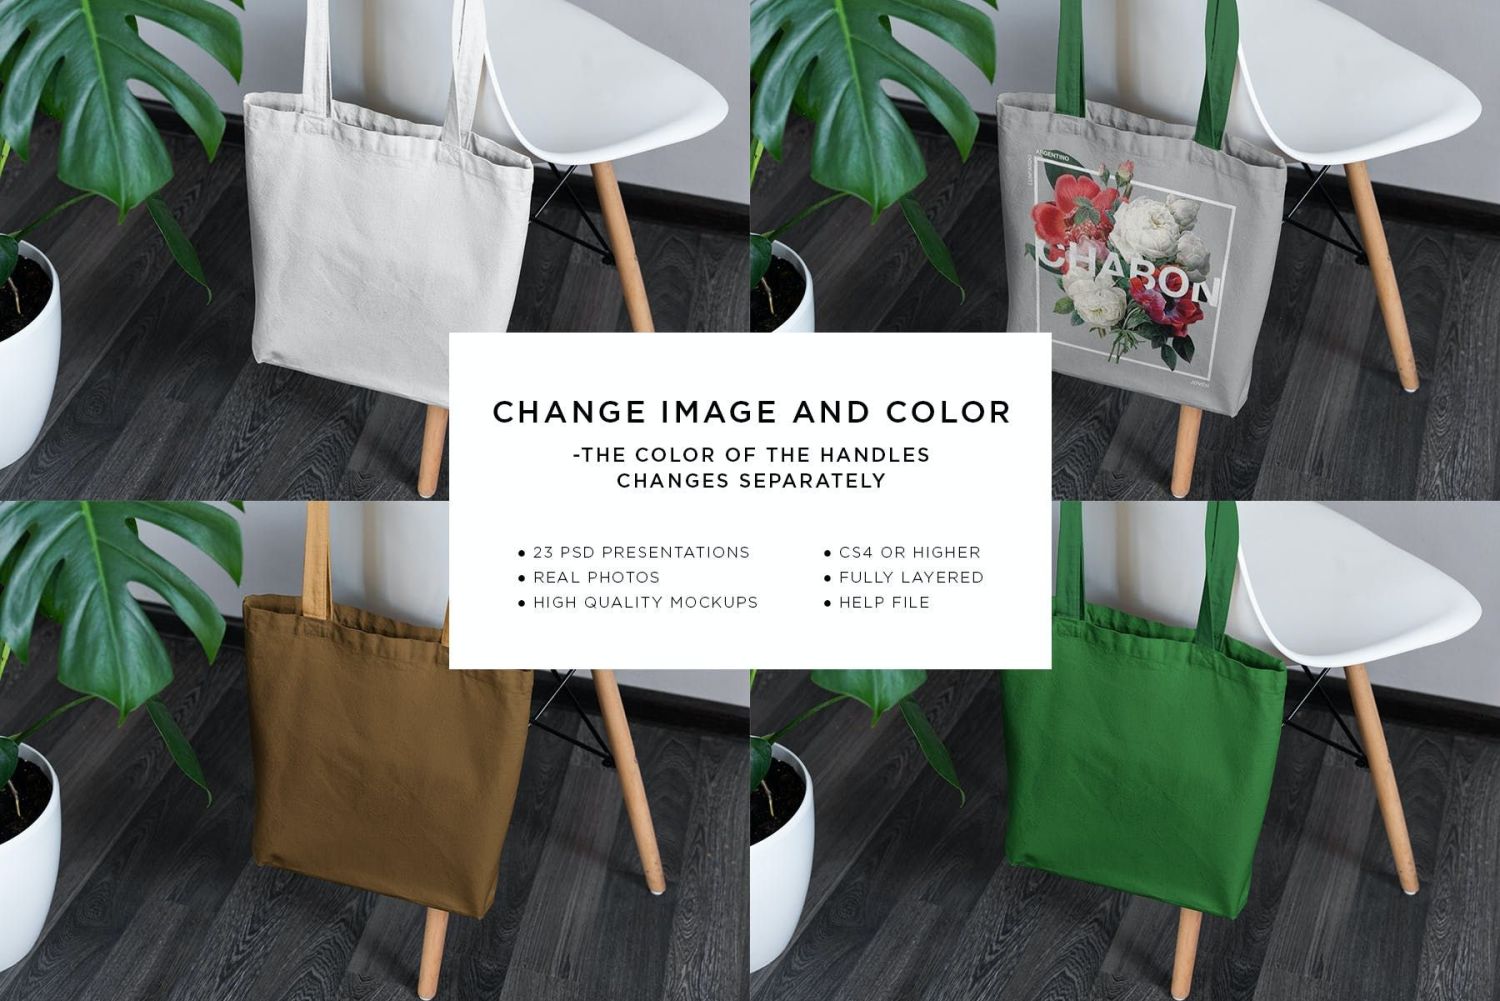 帆布手提包样机生活方式 Canvas Tote Bag Mock-Up Lifestyle插图15